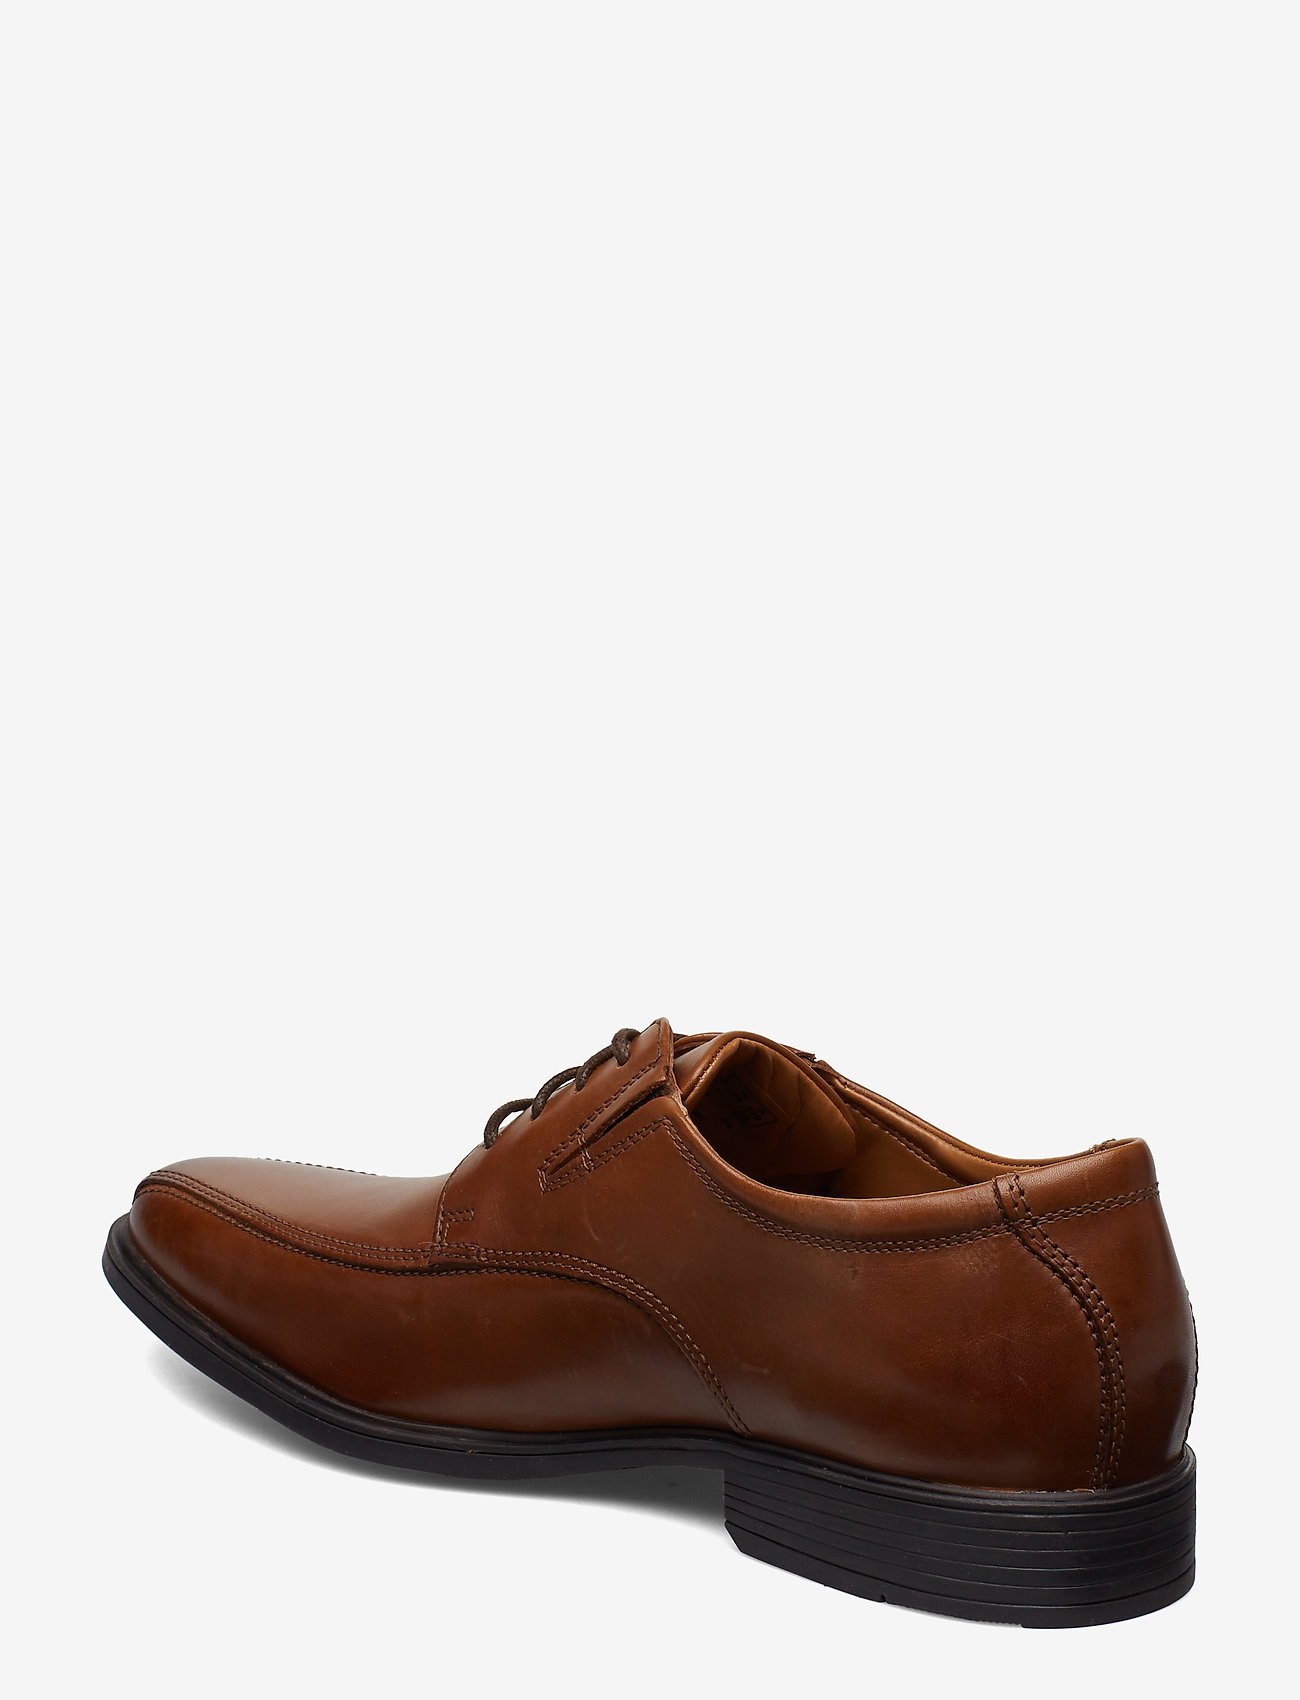 Clarks - Tilden Walk - laced shoes - dark tan lea - 1